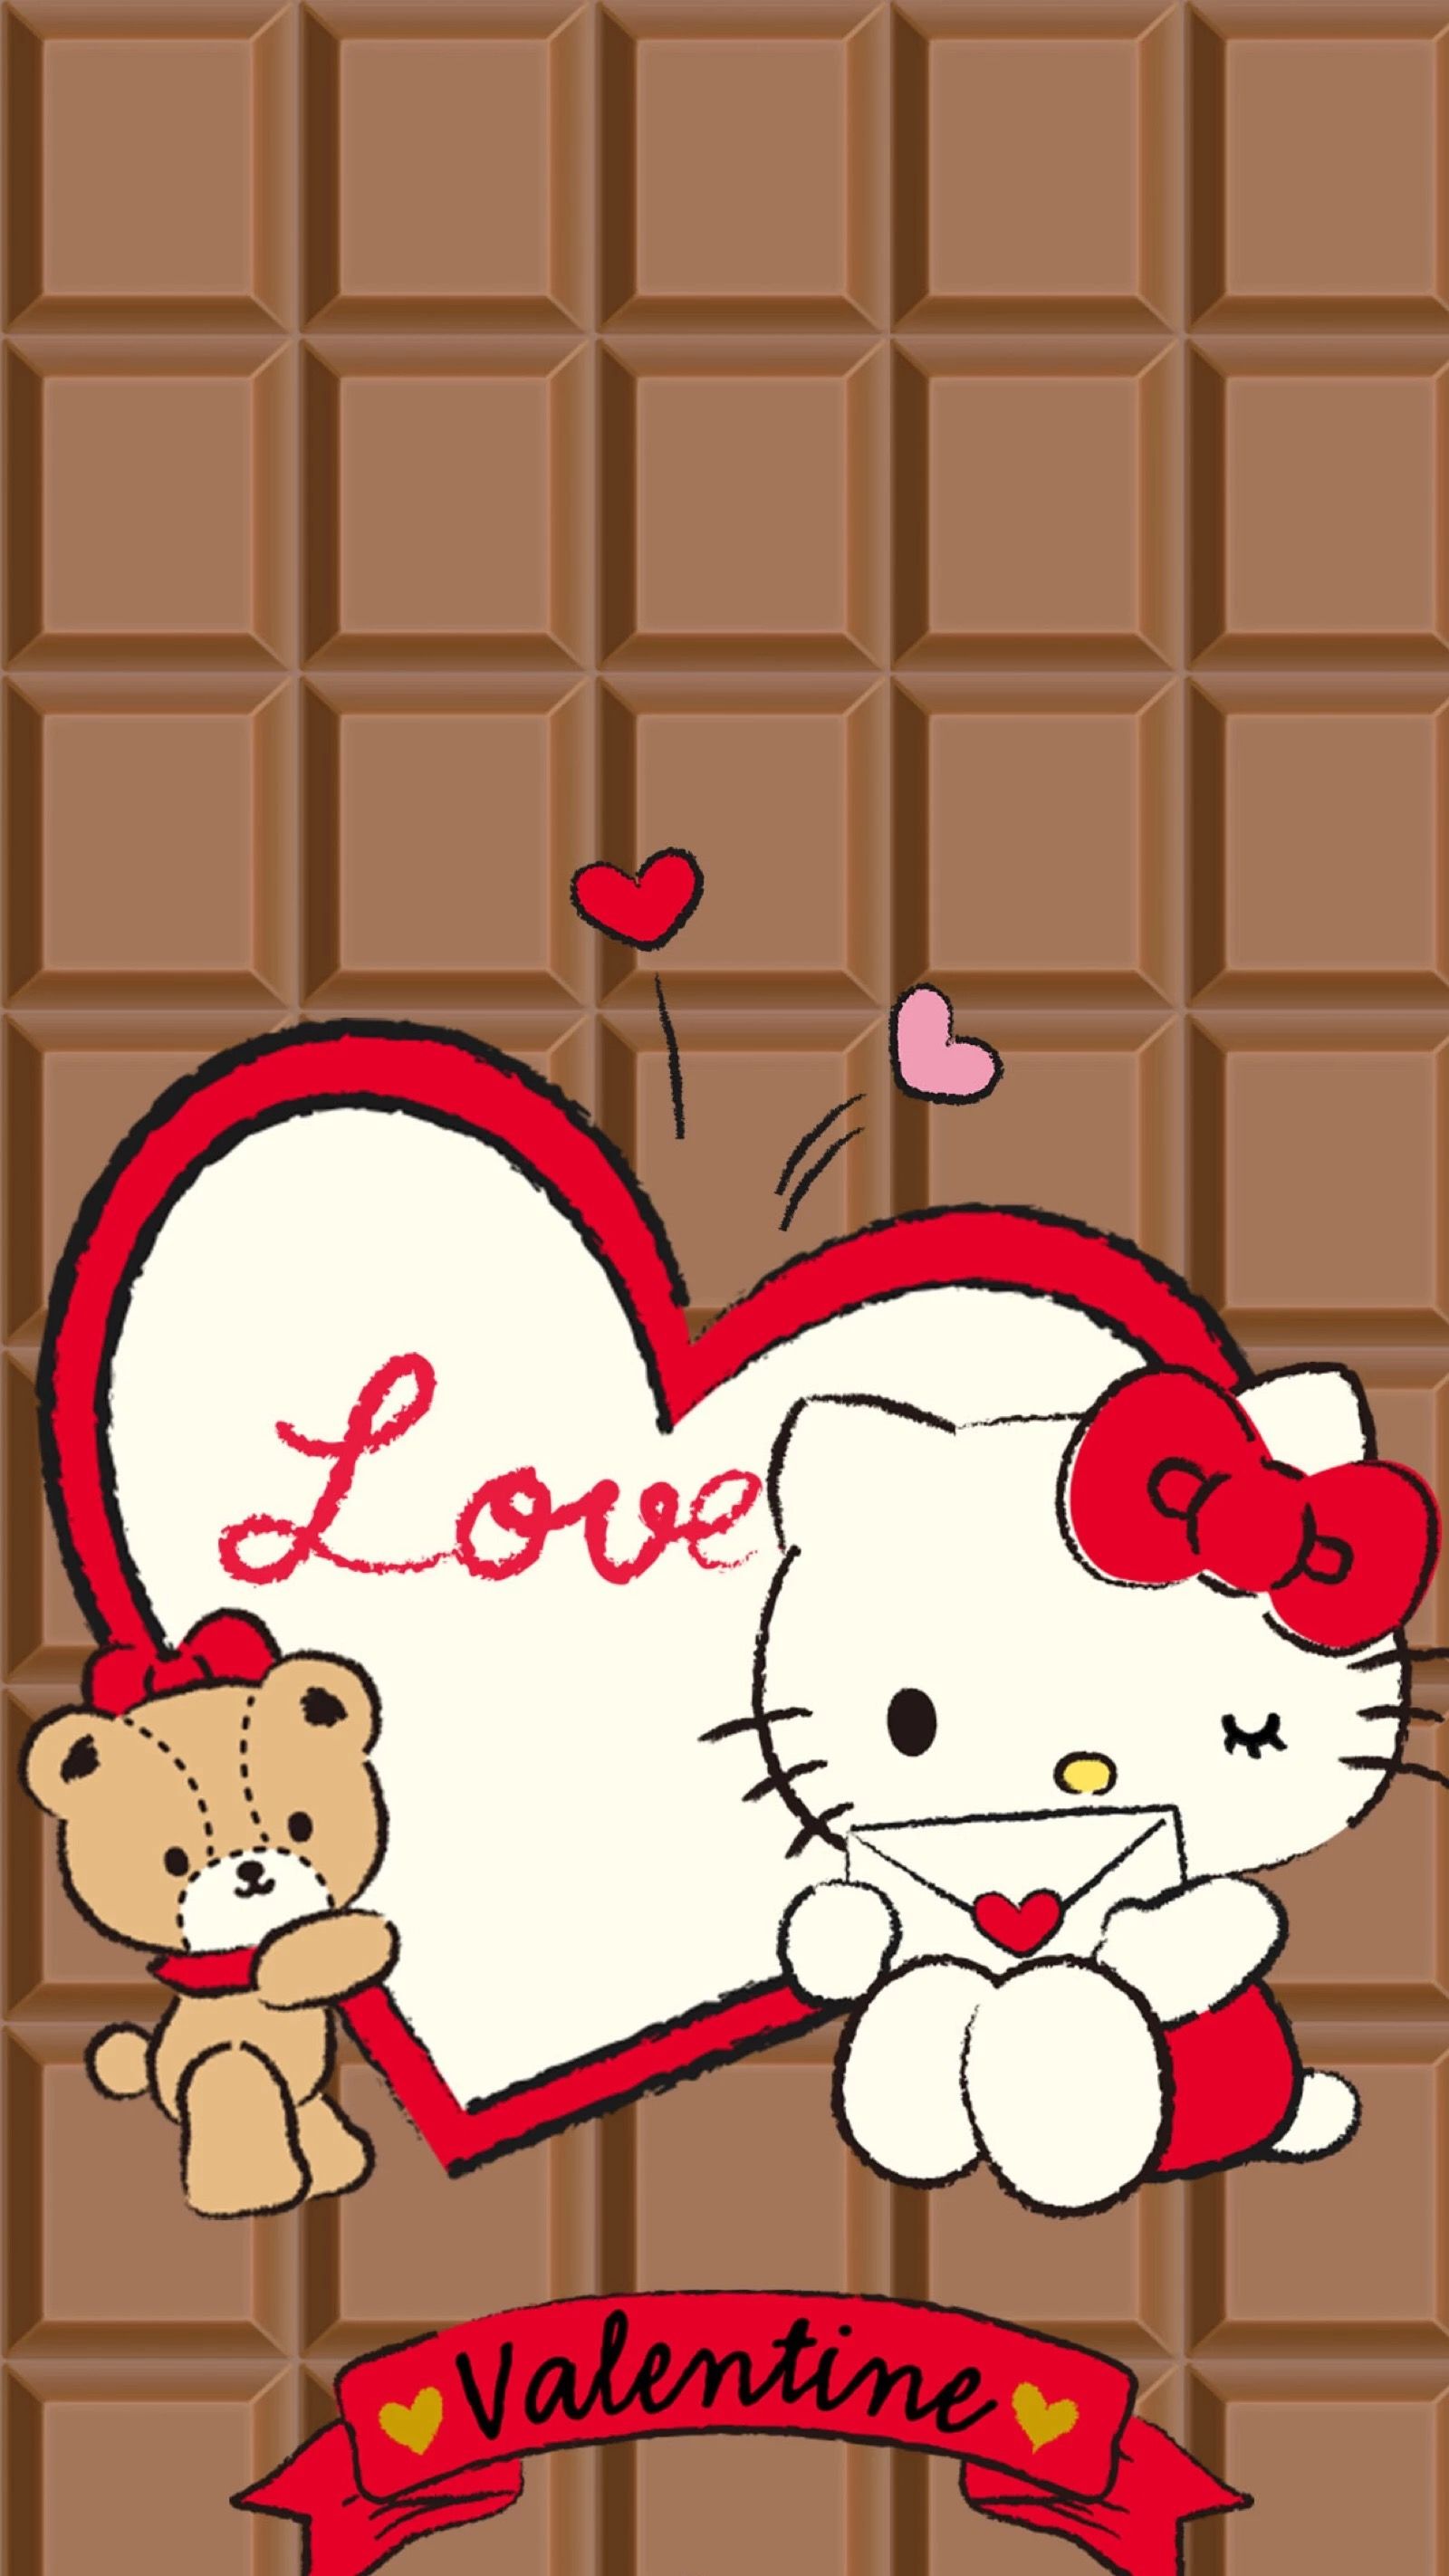 My Favorite Kitty. Hello kitty drawing, Hello kitty art, Hello kitty wallpaper